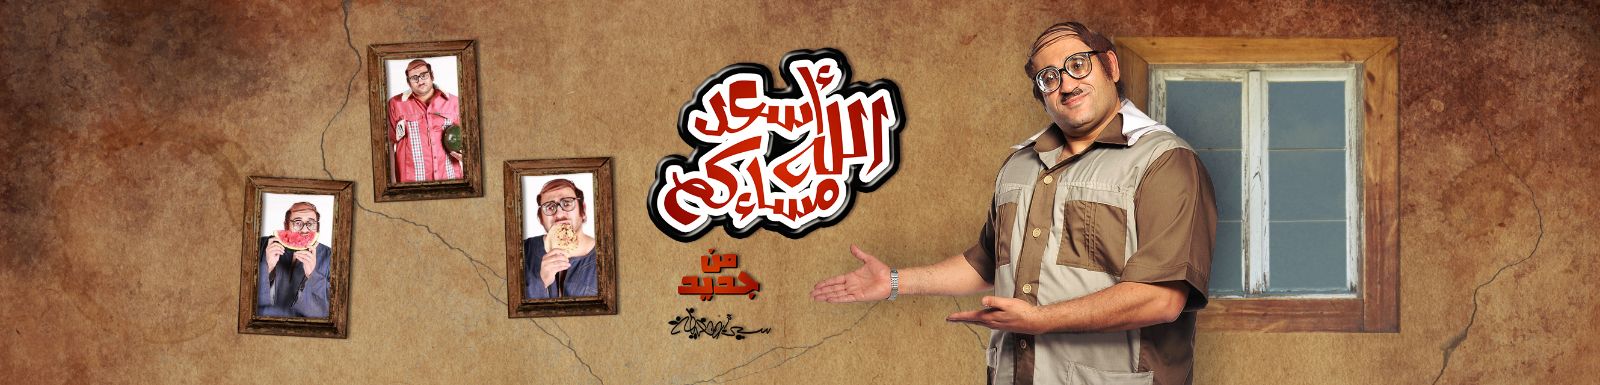 مشاهدة برنامج أسعد الله مسائكم الحلقة 7 السابعة اليوم الخميس 12-6-2014 كاملة